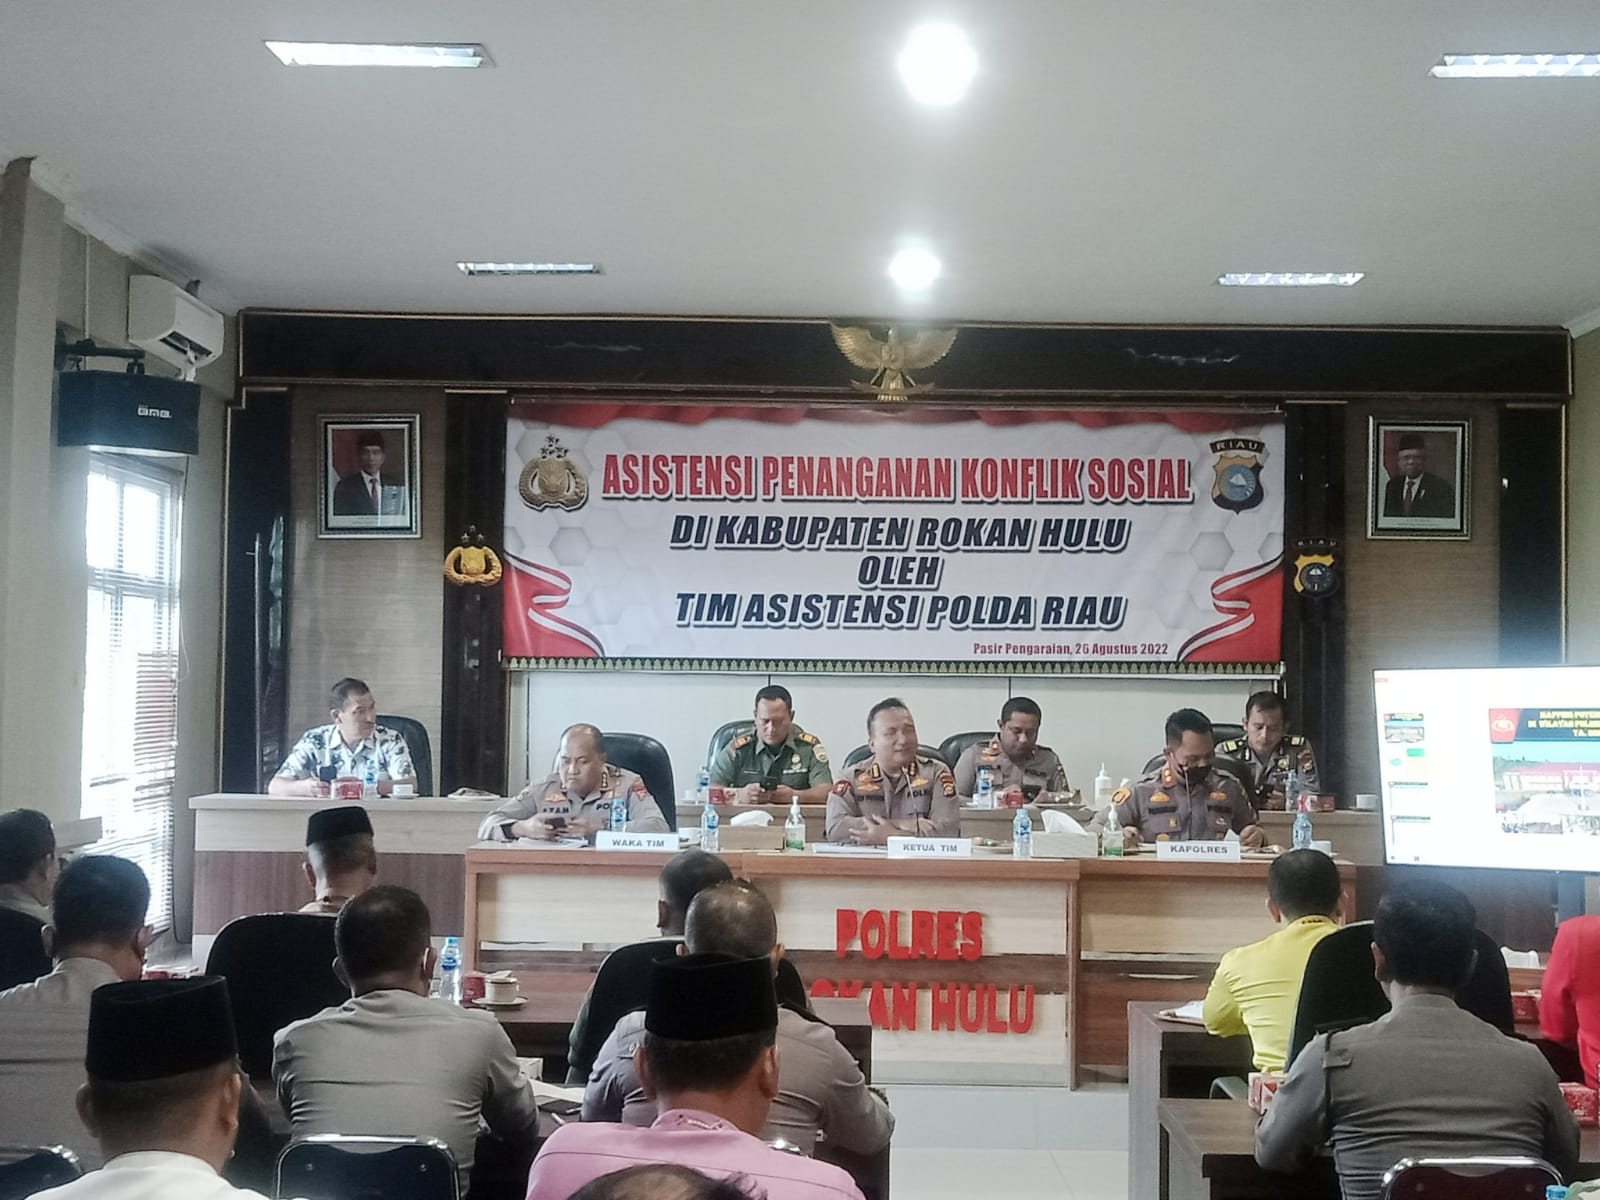 Dalam Penanganan Konflik Sosial, Polres Rohul Bersama Stakeholder Terima TIM A Asistensi Polda Riau